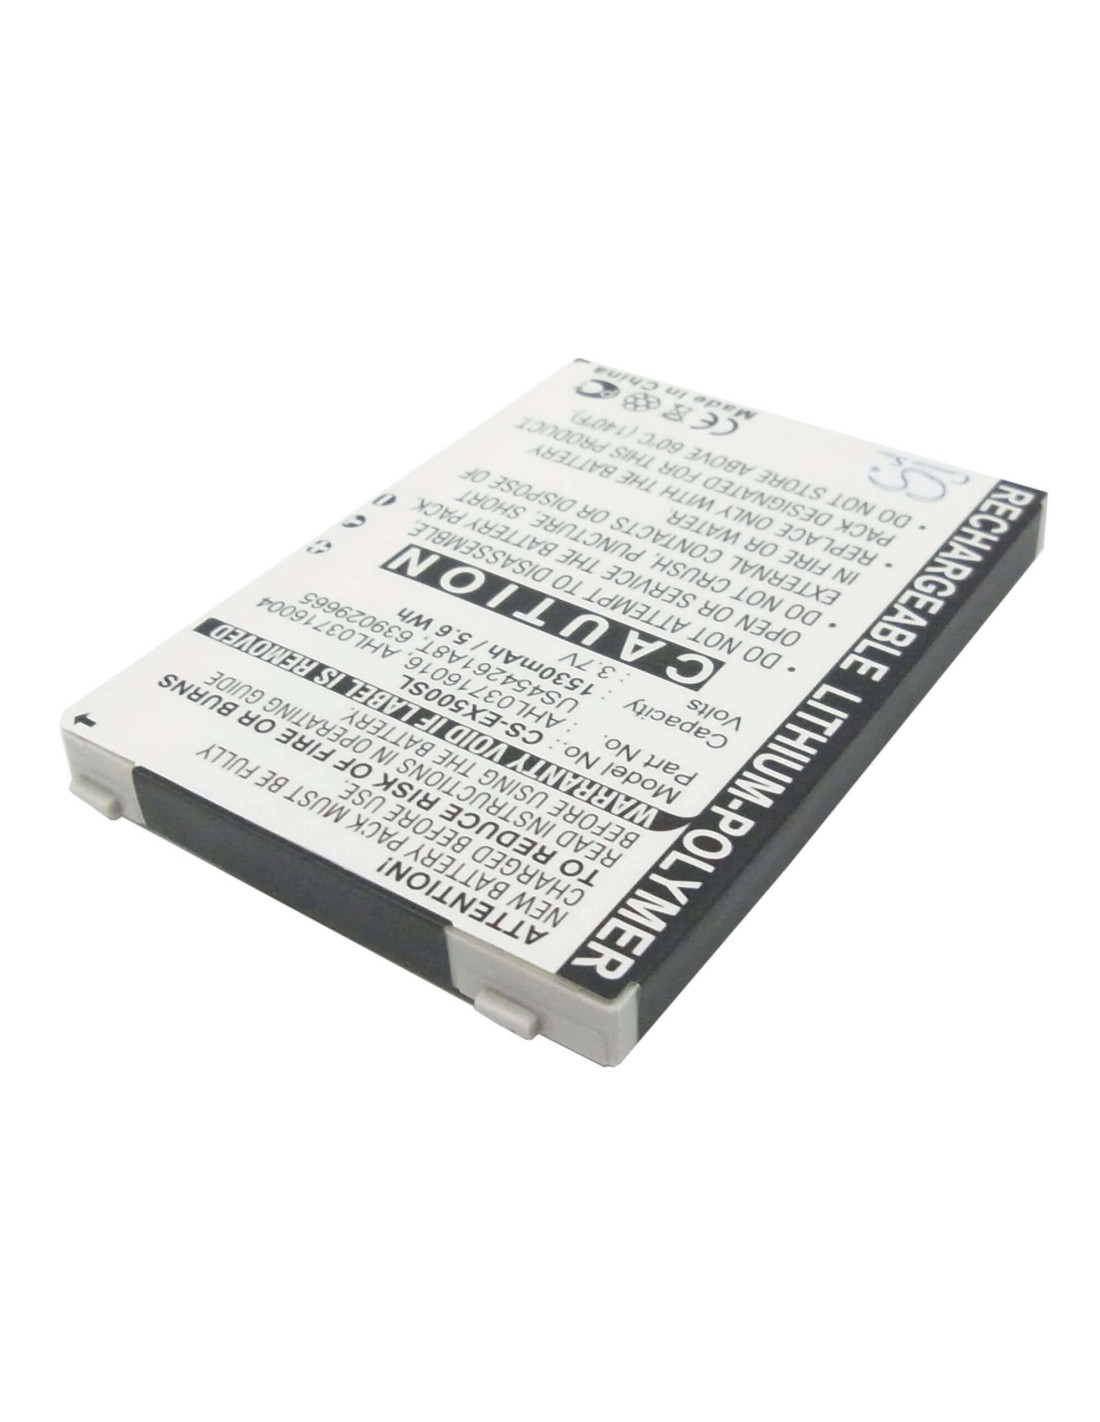 Battery for E-TEN glofiish X500, glofiish X500+, glofiish X600 3.7V, 1530mAh - 5.66Wh